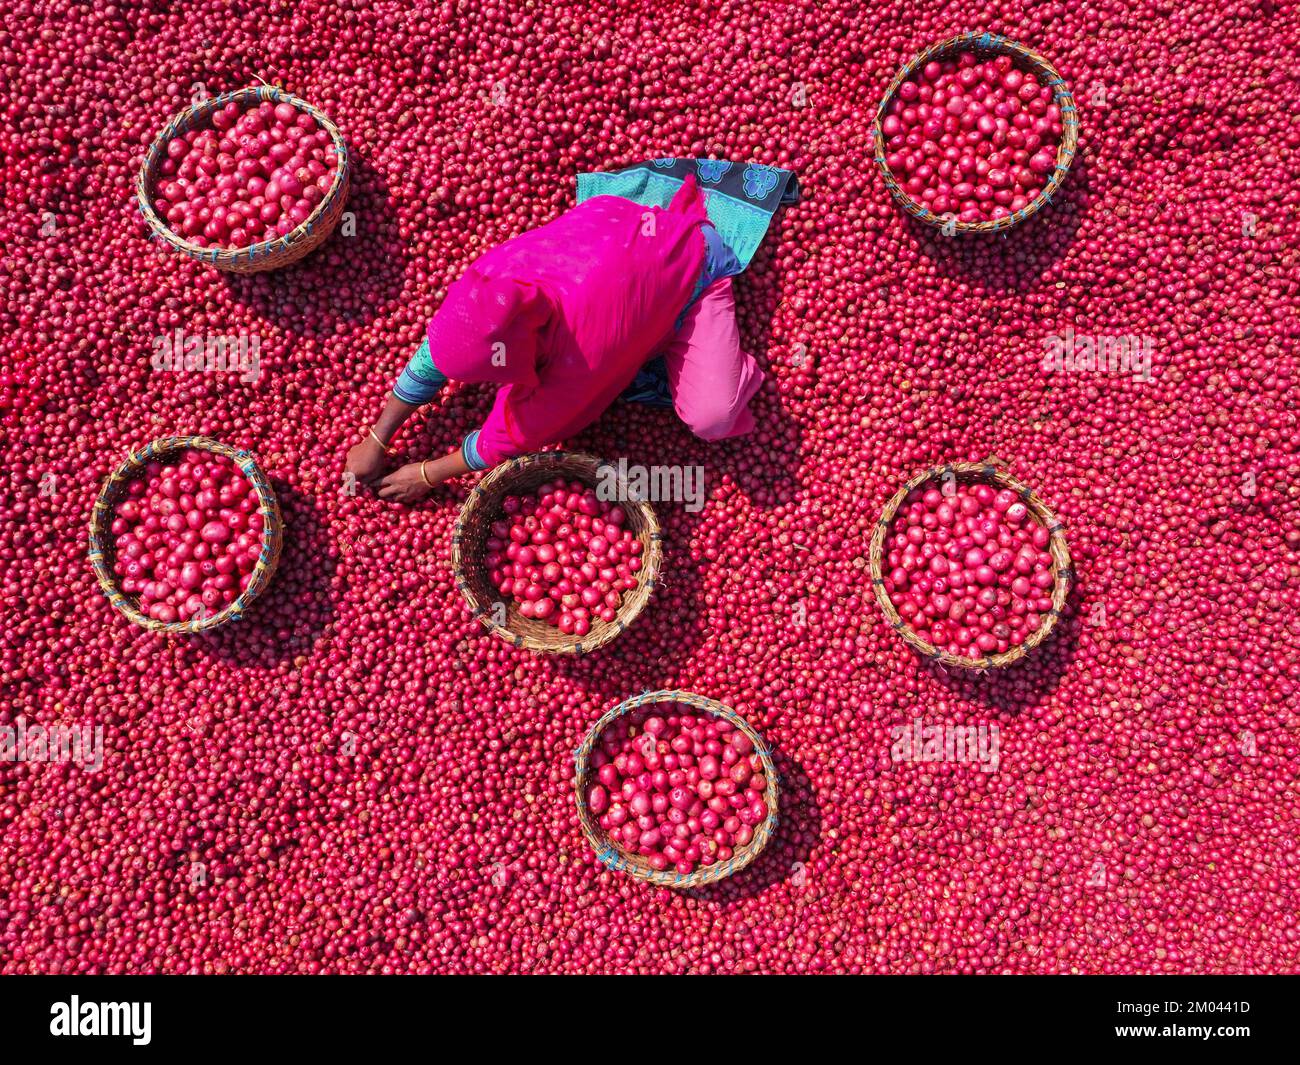 Les travailleurs font descendre des tonnes de pommes de terre rouges avant des emballer dans des paniers sur un marché de légumes. Des milliers de pommes de terre rouge vif sont lavées, triées et cueillies prêtes à être vendues dans tout le Bangladesh. Banque D'Images